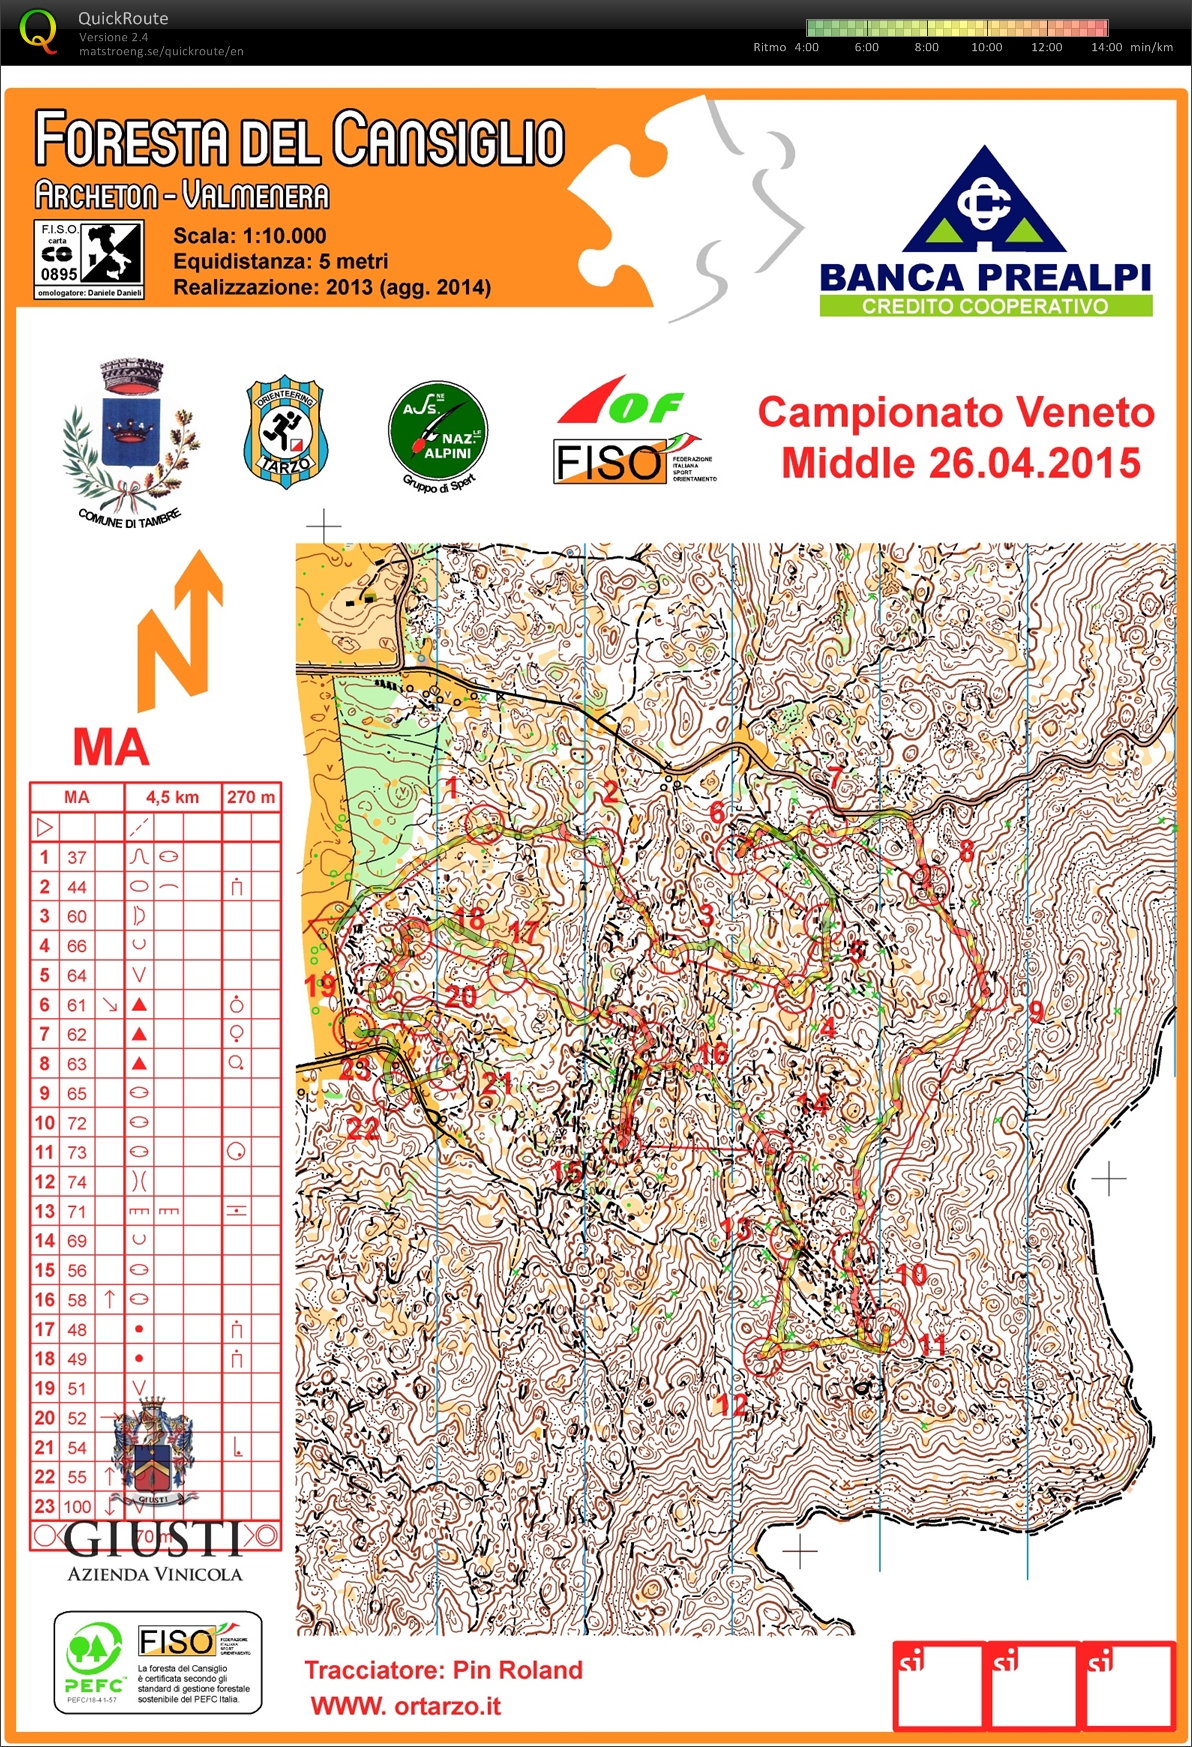 Campionato Veneto Middle 2015 (2015-04-26)